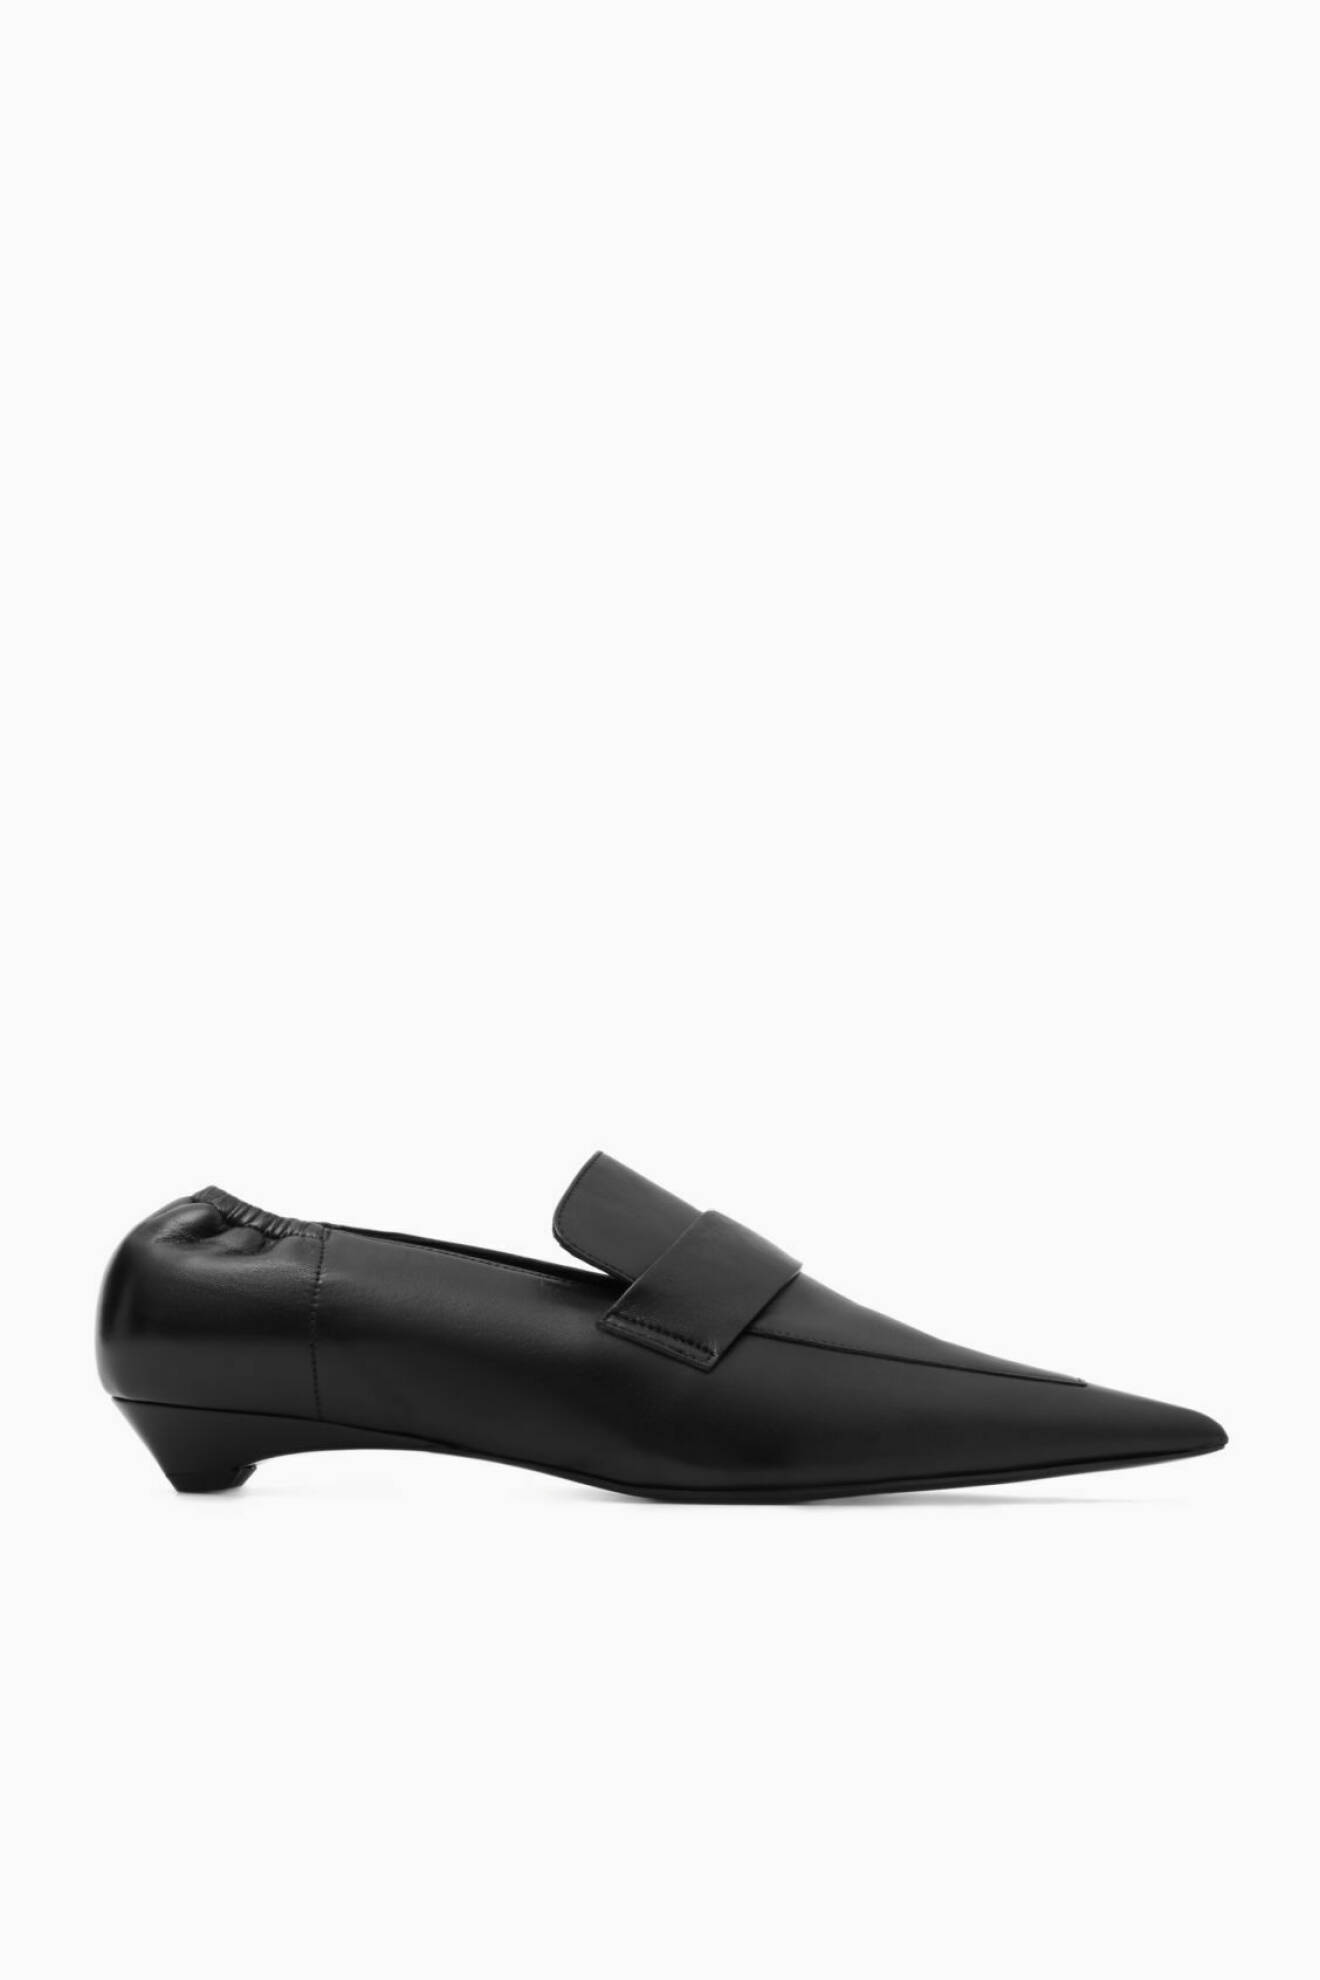 svarta loafers med spetsig tå från cos